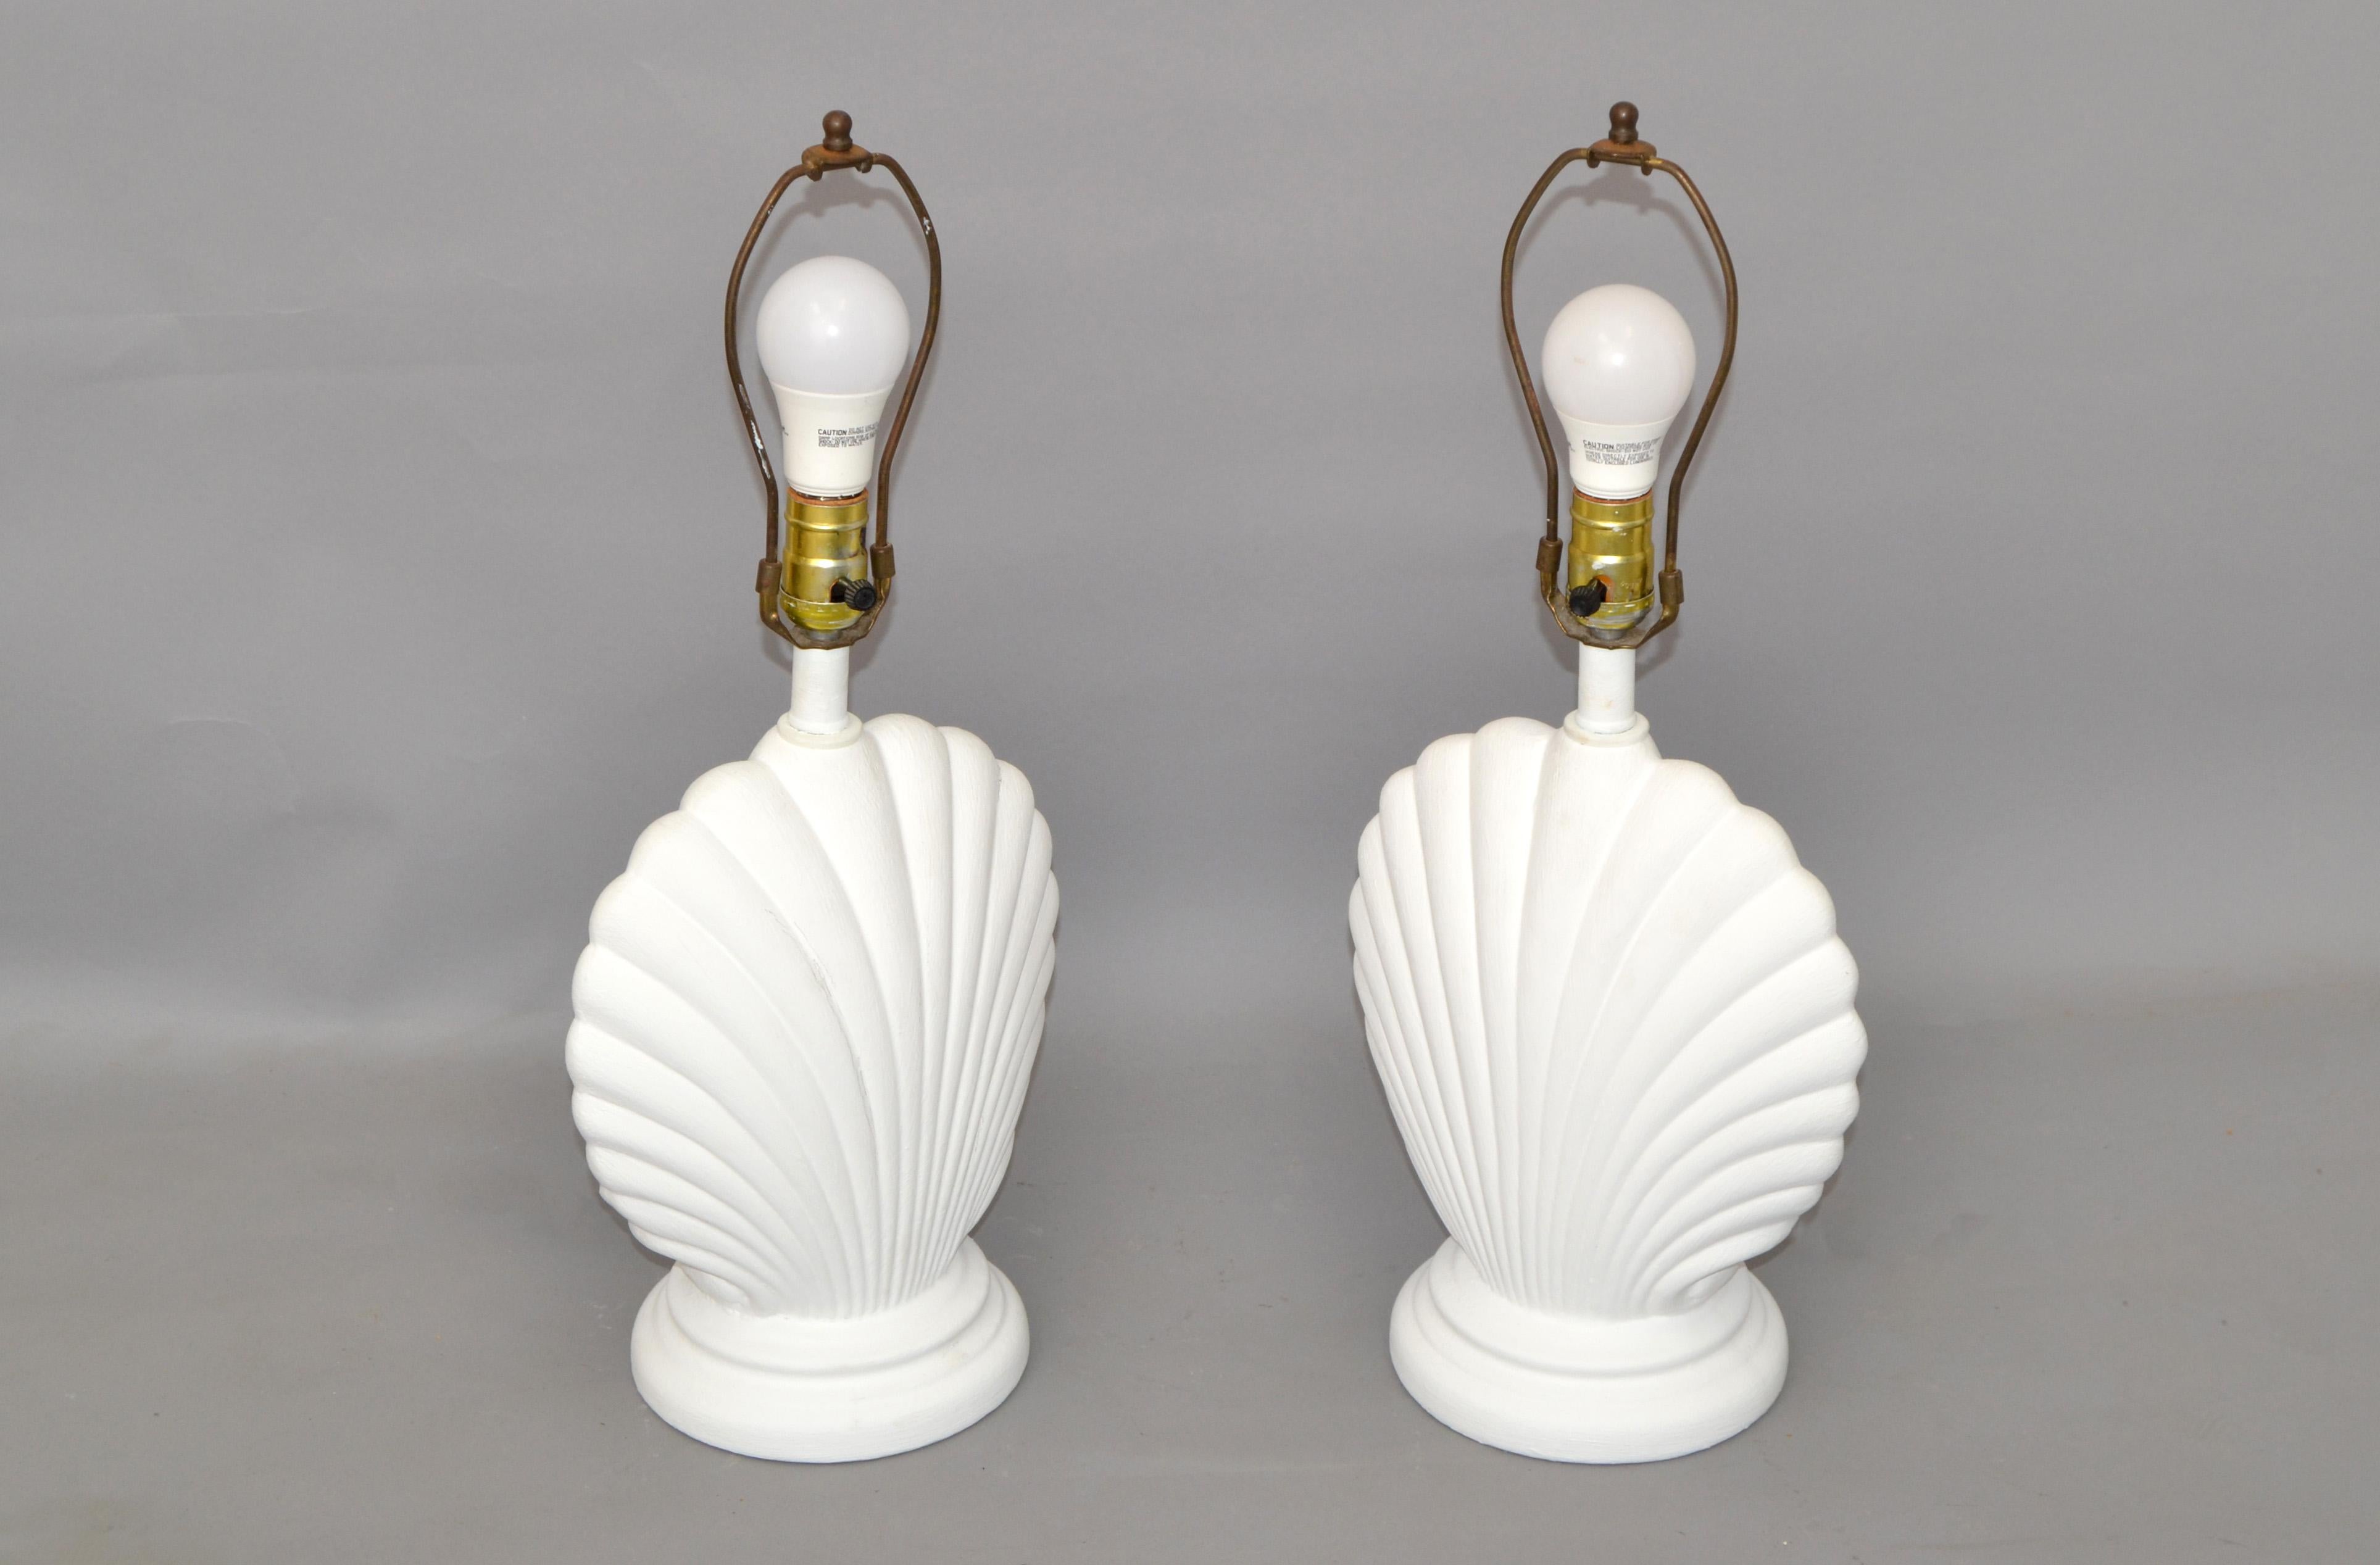 Nous vous proposons une paire de lampes de table en plâtre en forme de coquillages nautiques Hollywood Regency avec harpe et fleuron.
Récemment refini en Gesso blanc cassé.
Câblage américain et chaque lampe accepte une ampoule ordinaire ou